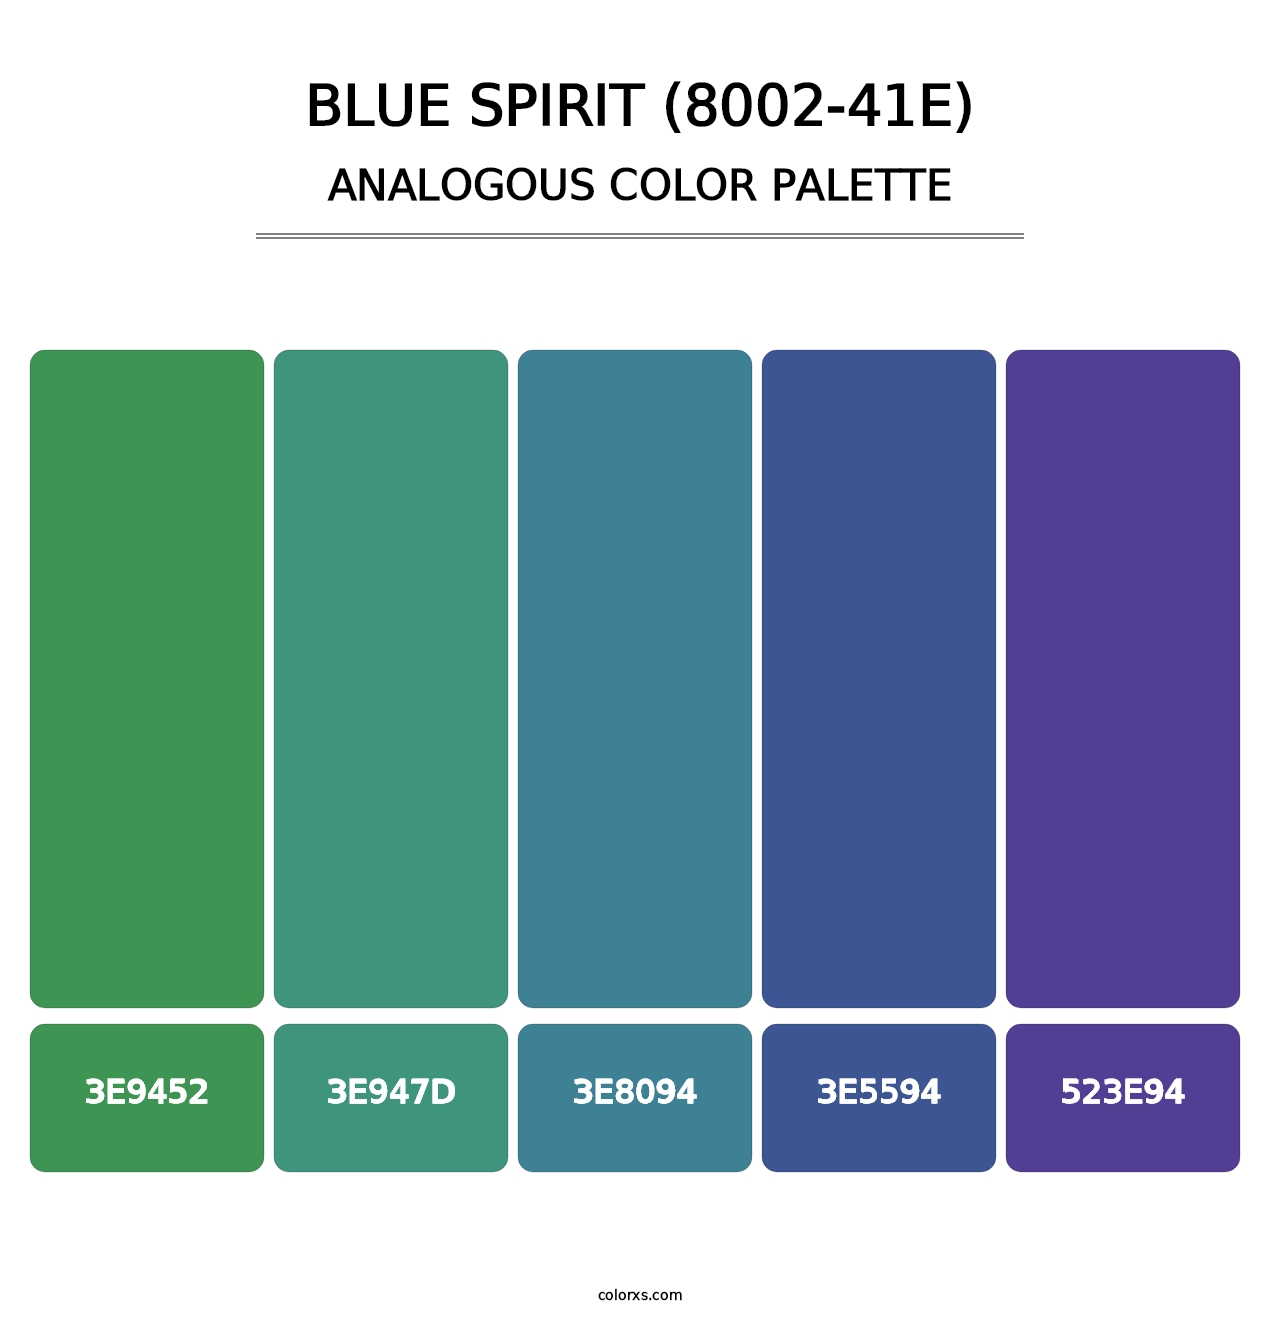 Blue Spirit (8002-41E) - Analogous Color Palette